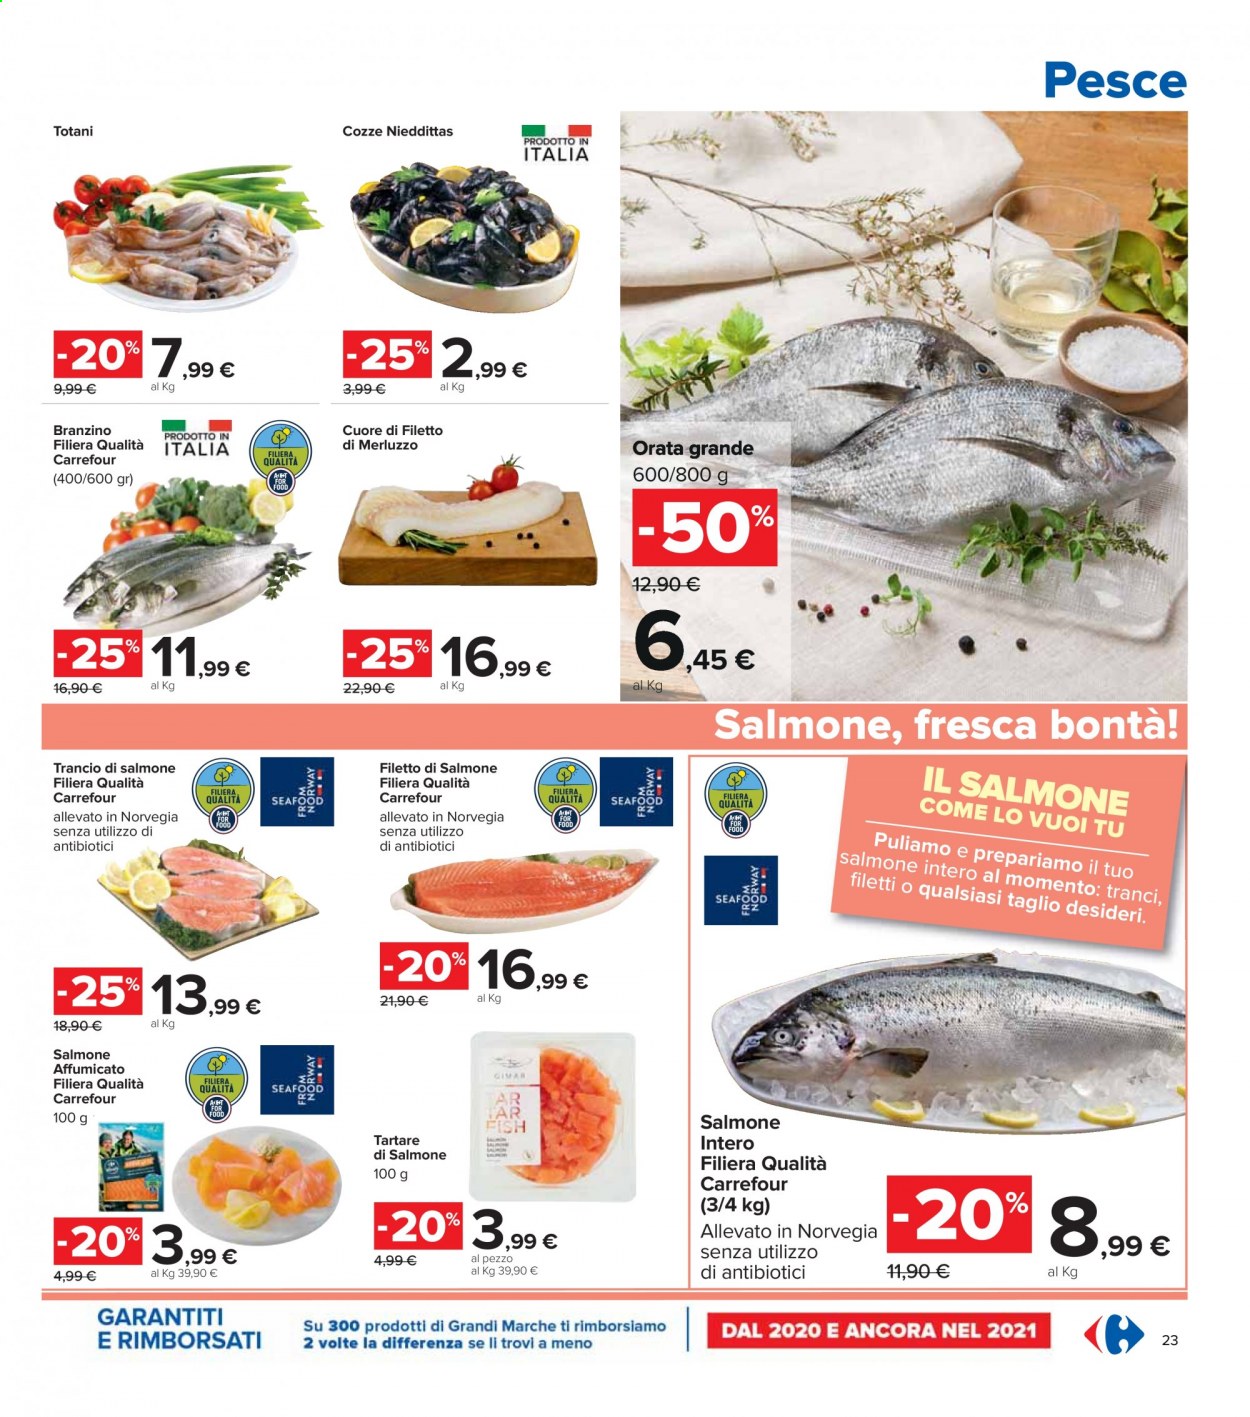 thumbnail - Volantino Carrefour - 6/5/2021 - 19/5/2021 - Prodotti in offerta - salmone, branzino, cozze, filetti di merluzzo, spigola, pesce, merluzzo, totani, orata, salmone affumicato, tartare di pesce. Pagina 23.